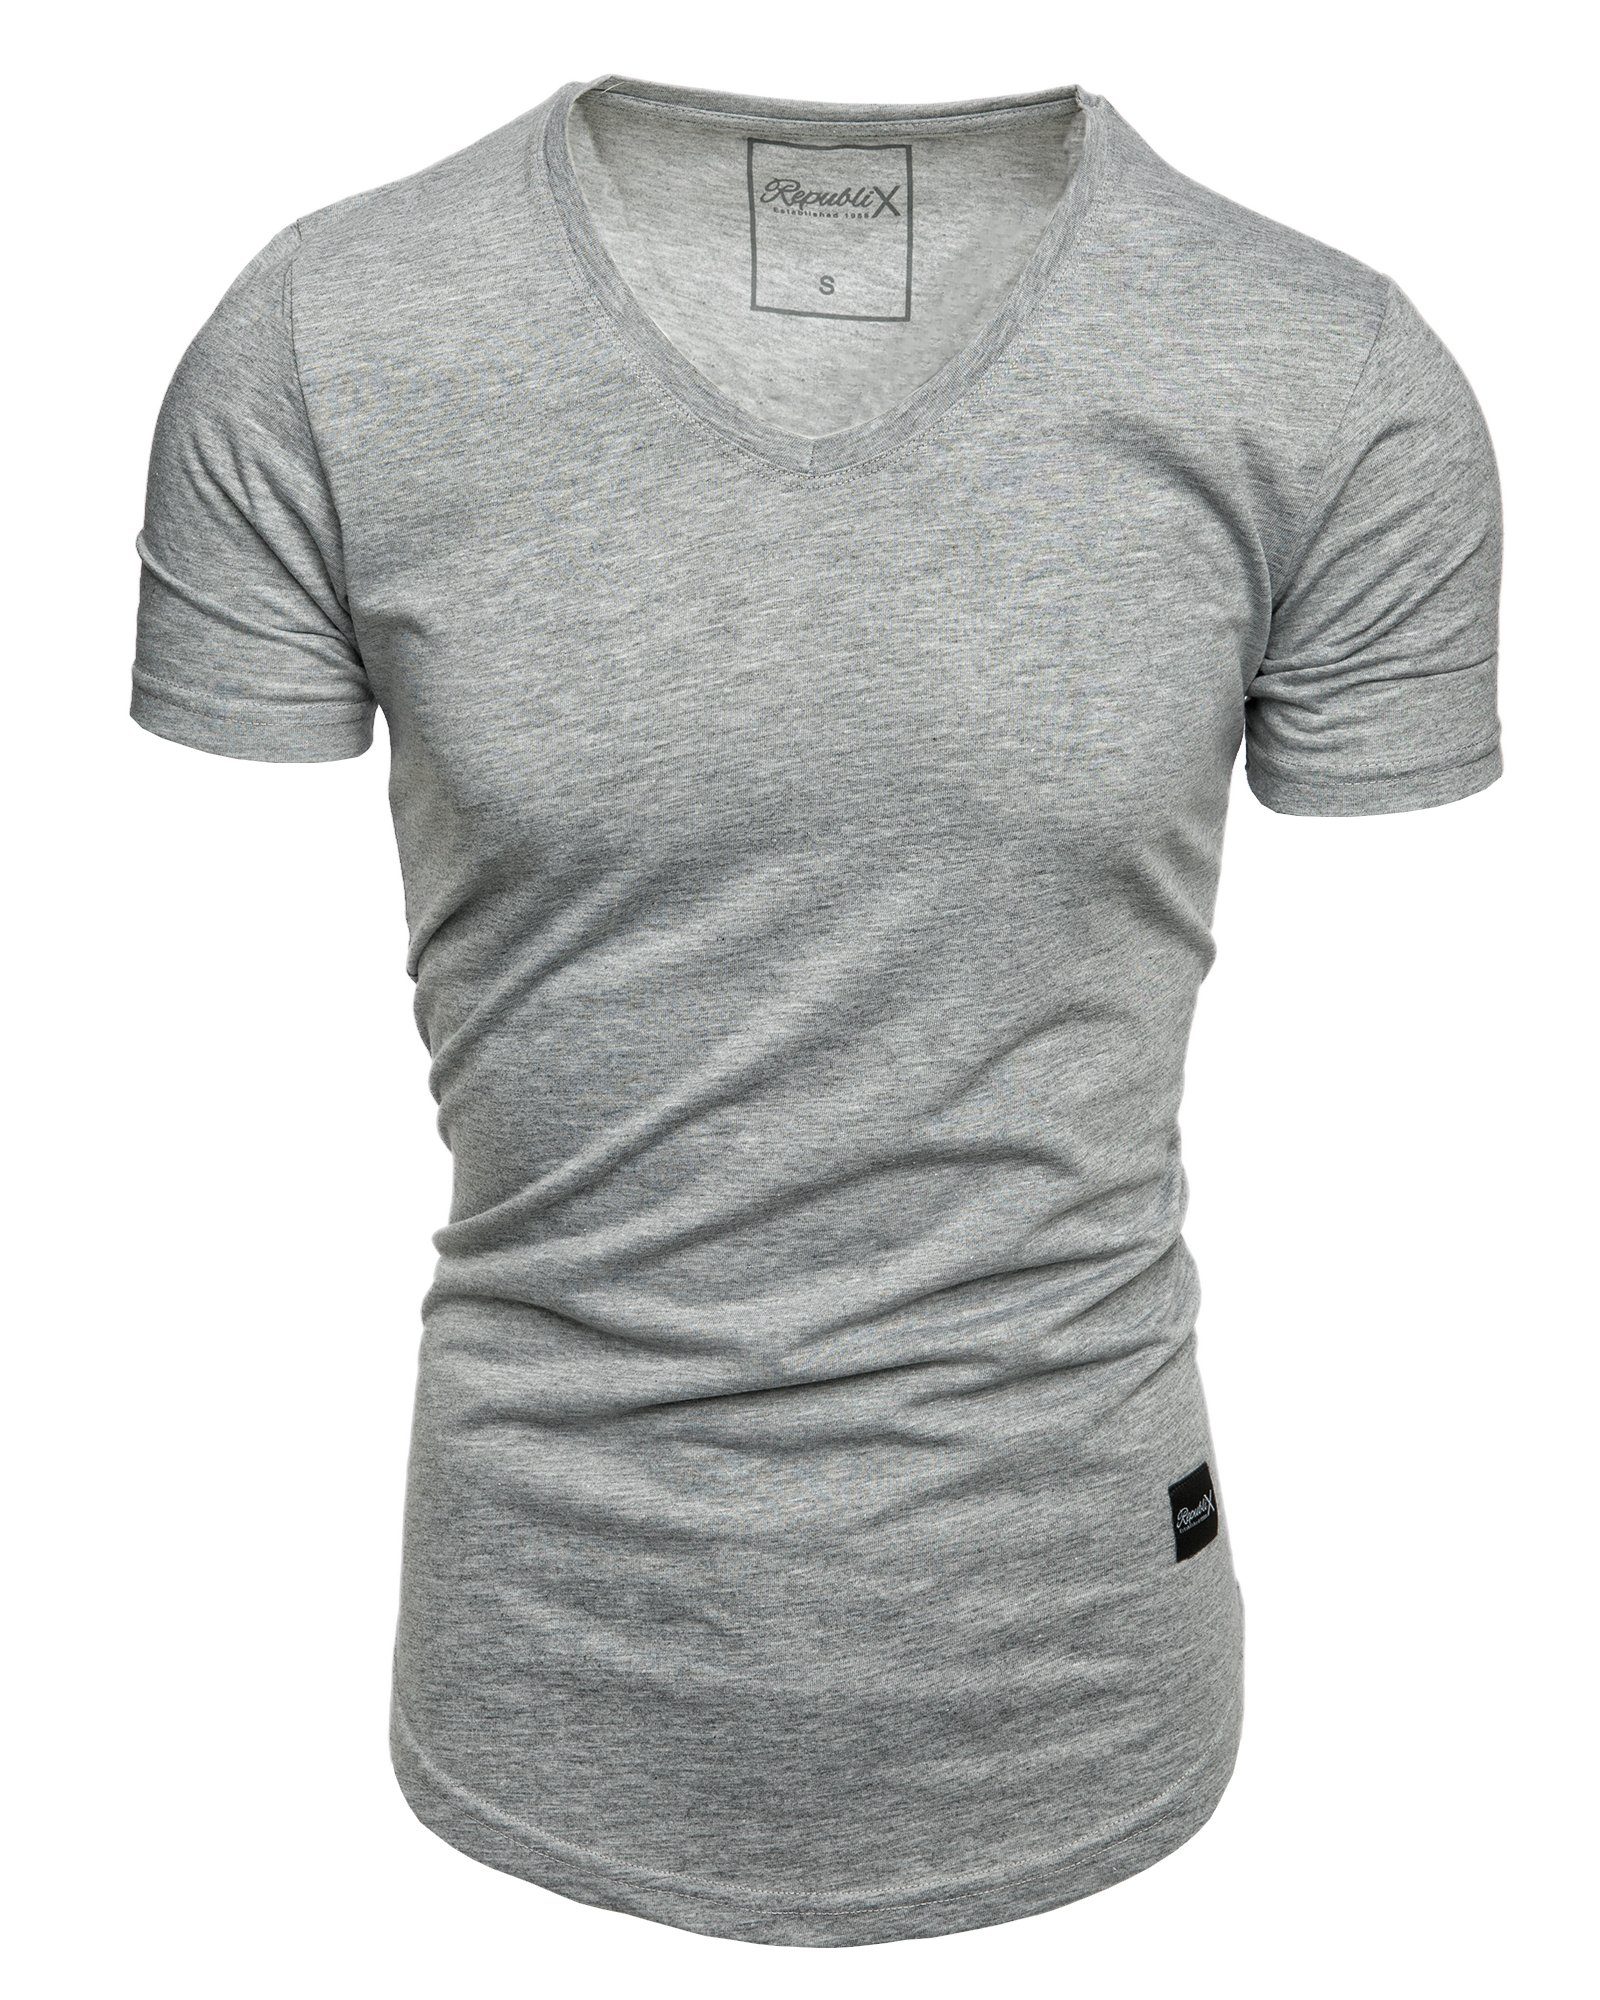 REPUBLIX T-Shirt BRANDON Herren Oversize Basic Shirt mit V-Ausschnitt Grau Melange